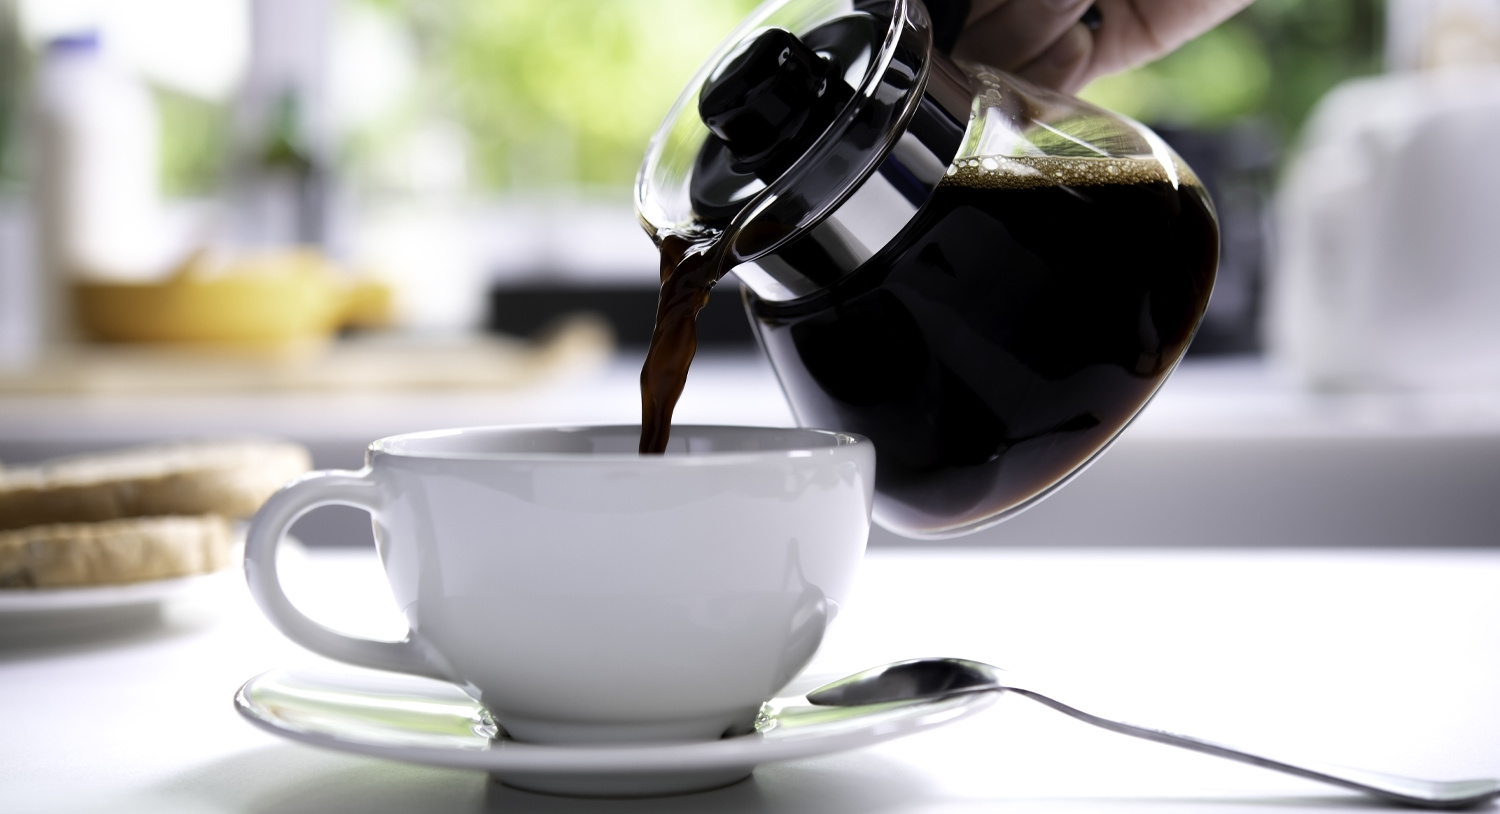 dzbanek-do-kawy-polewanie-kawy-lanie-kawy-do-filiżanki-czarna-kawa-kawa-z-ekspresu-blog